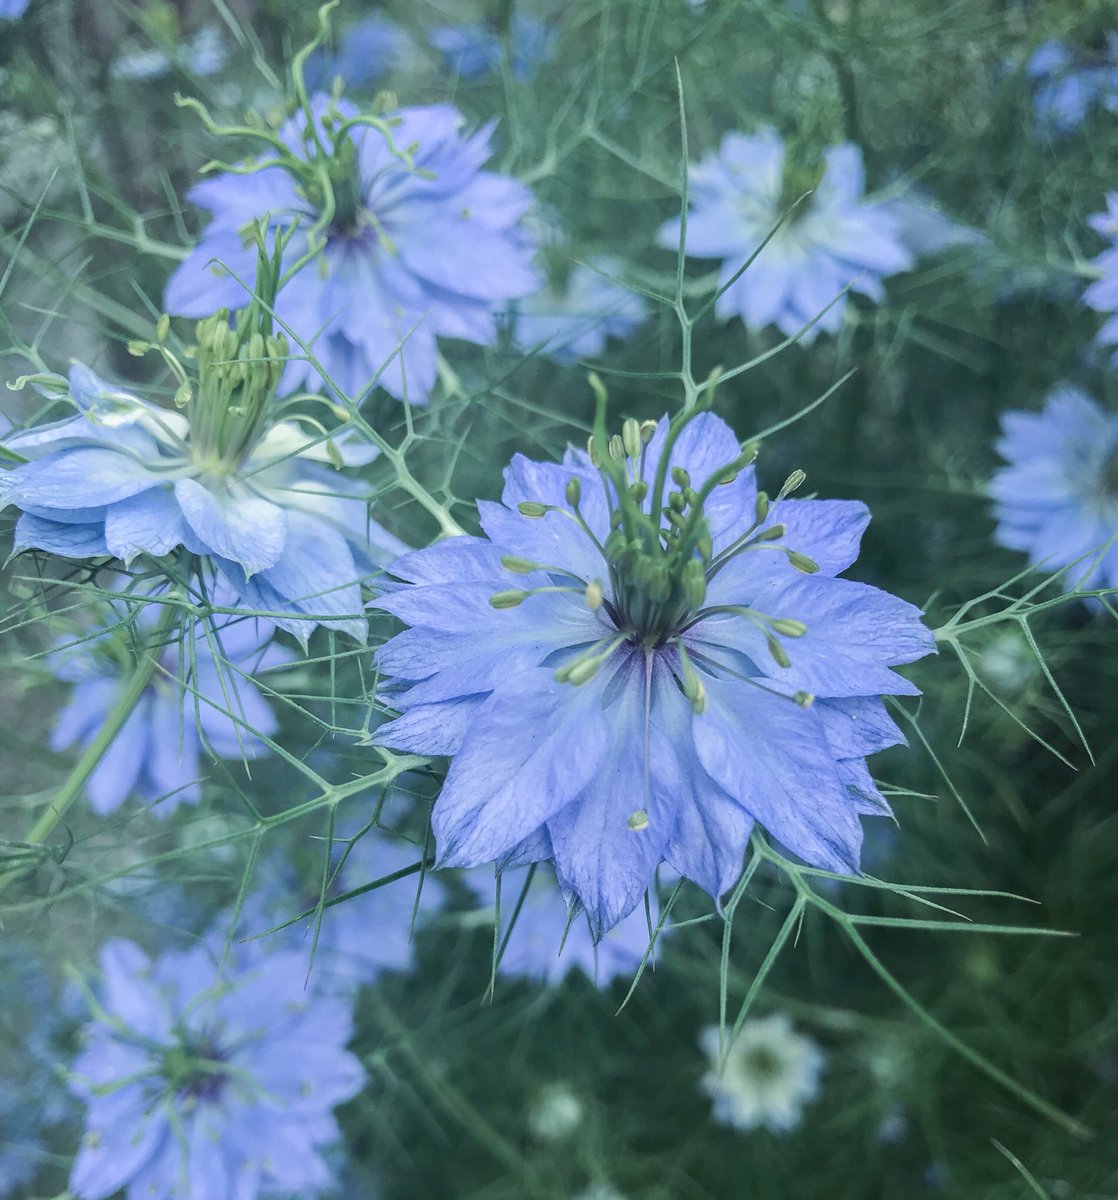 تويتر ぱく على تويتر 初夏に咲くコスモスみたいな青い花 ニゲラというお名前らしい 好きな花が増えて嬉しい T Co Vpz1z0cc7r